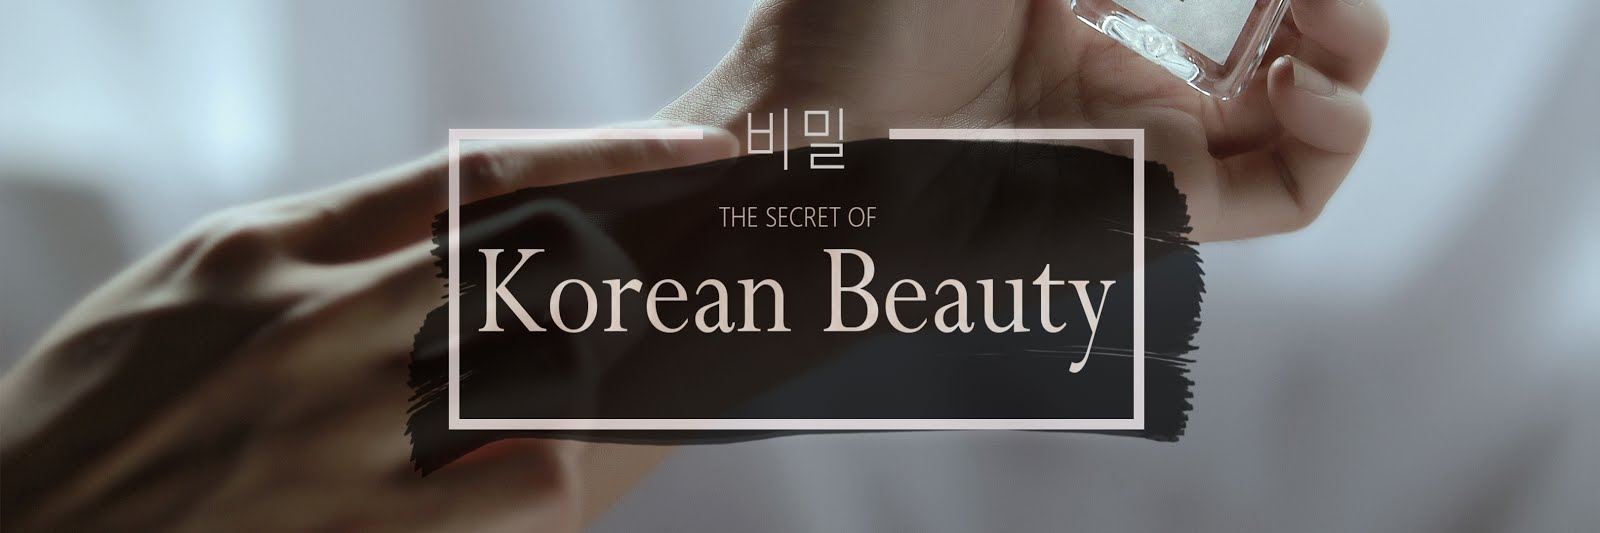 The secret of korean beauty